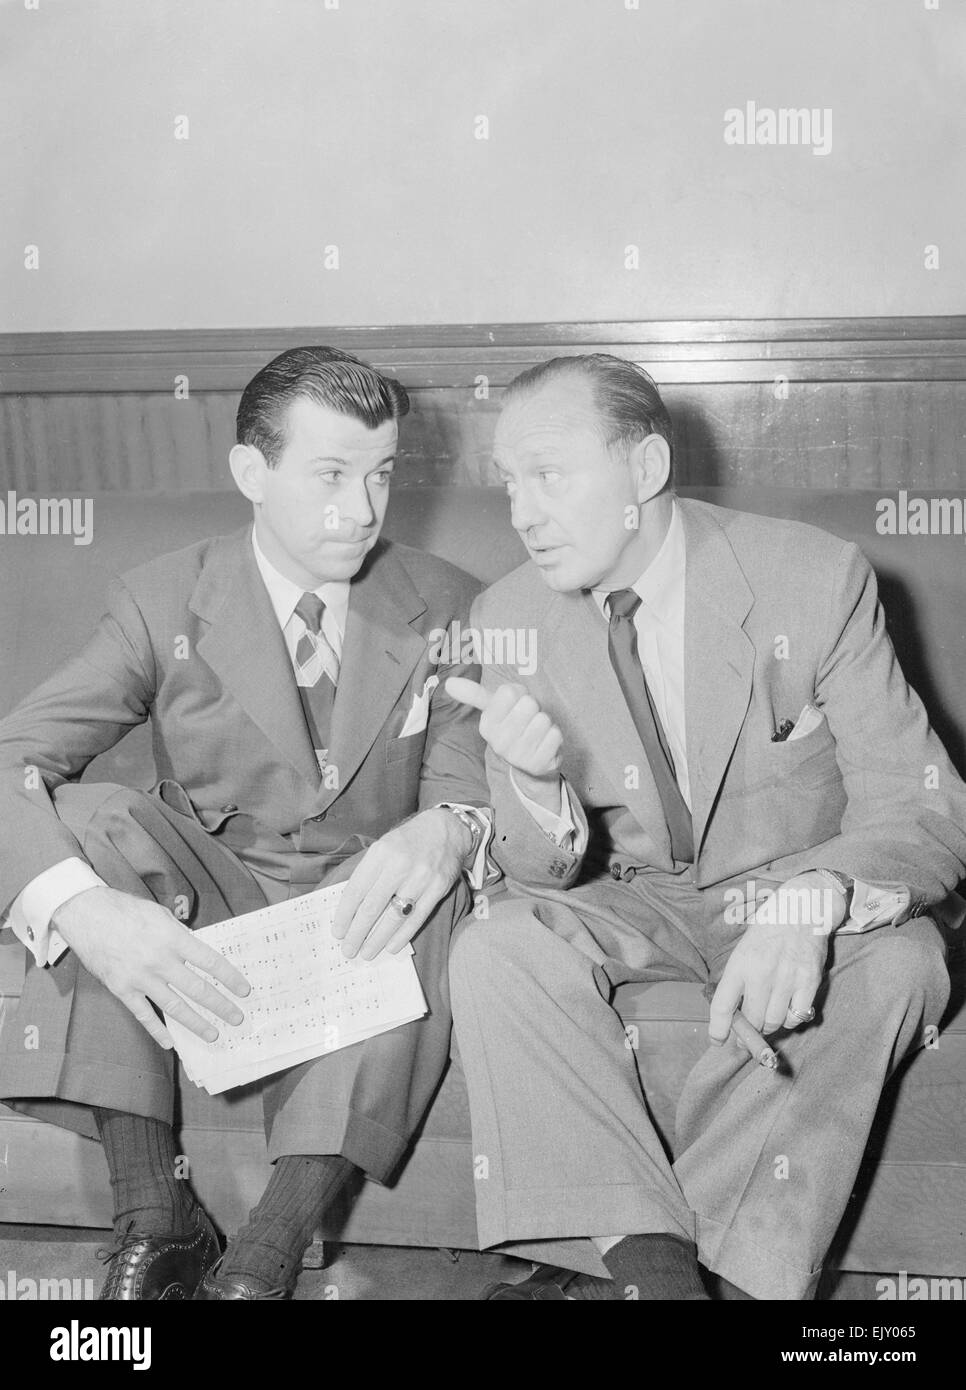 El comediante Jack Benny (derecha), visto aquí con el cantante Dennis día (a la izquierda). 2 de junio de 1952 Foto de stock